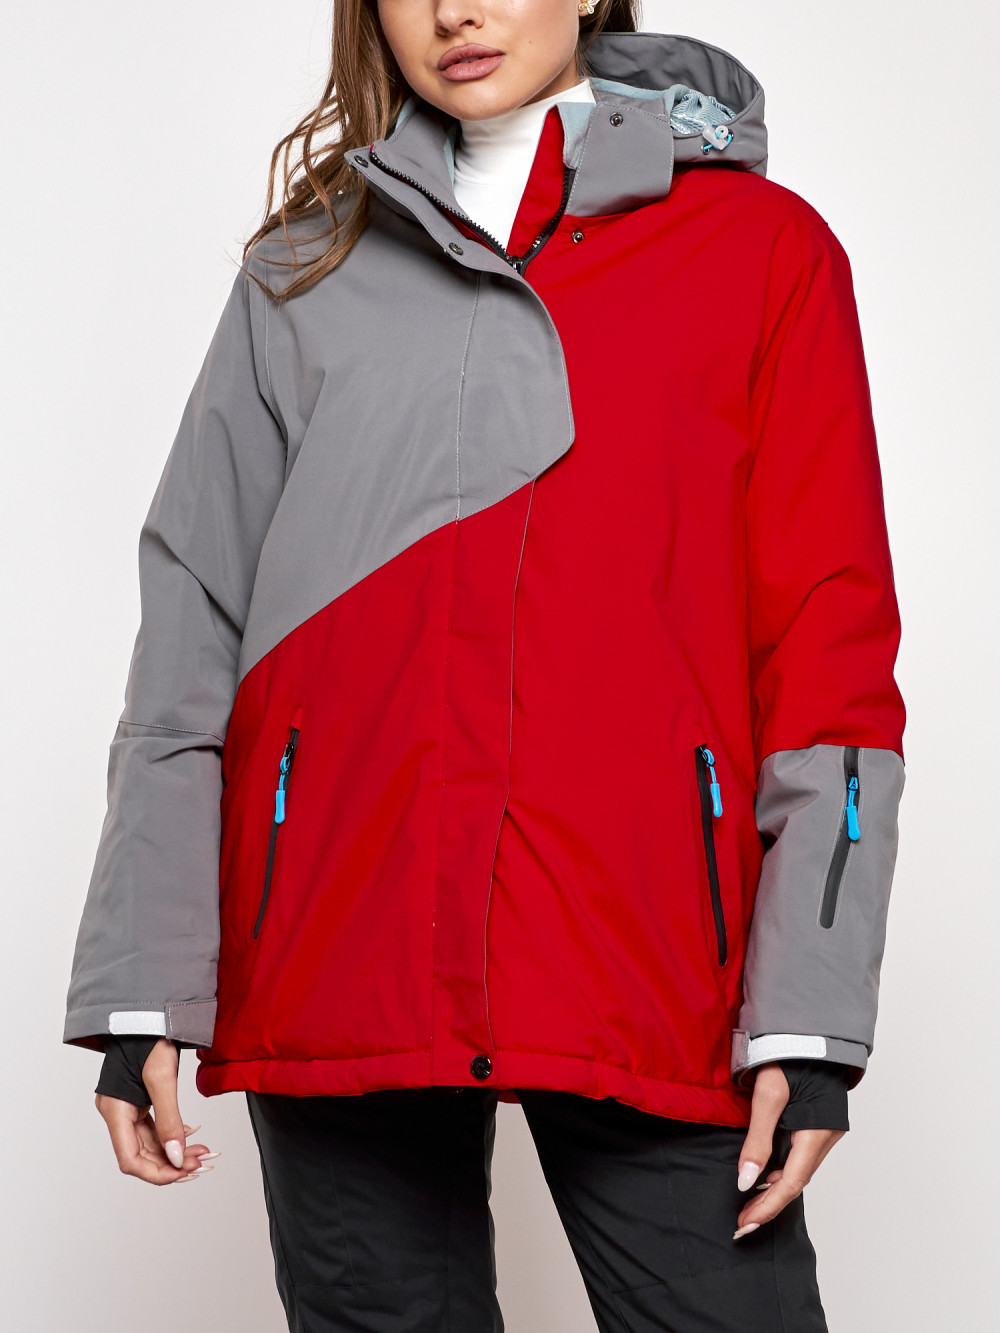 Горнолыжная куртка женская зимняя большого размера Chunmai AD2278Kr, 56